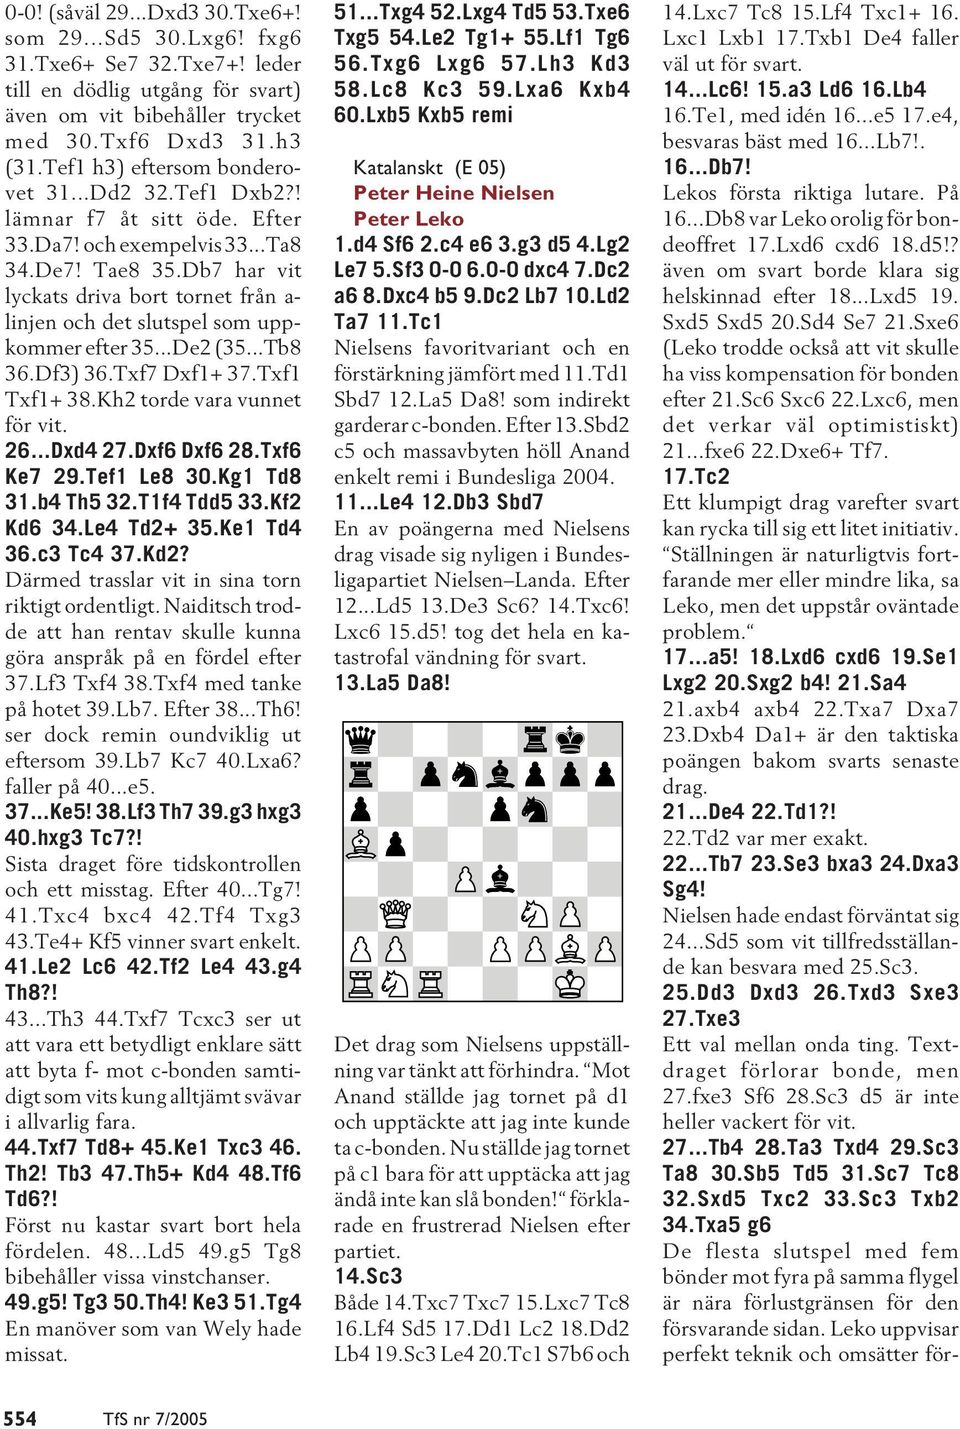 Db7 har vit lyckats driva bort tornet från a- linjen och det slutspel som uppkommer efter 35...De2 (35...Tb8 36.Df3) 36.Txf7 Dxf1+ 37.Txf1 Txf1+ 38.Kh2 torde vara vunnet för vit. 26...Dxd4 27.